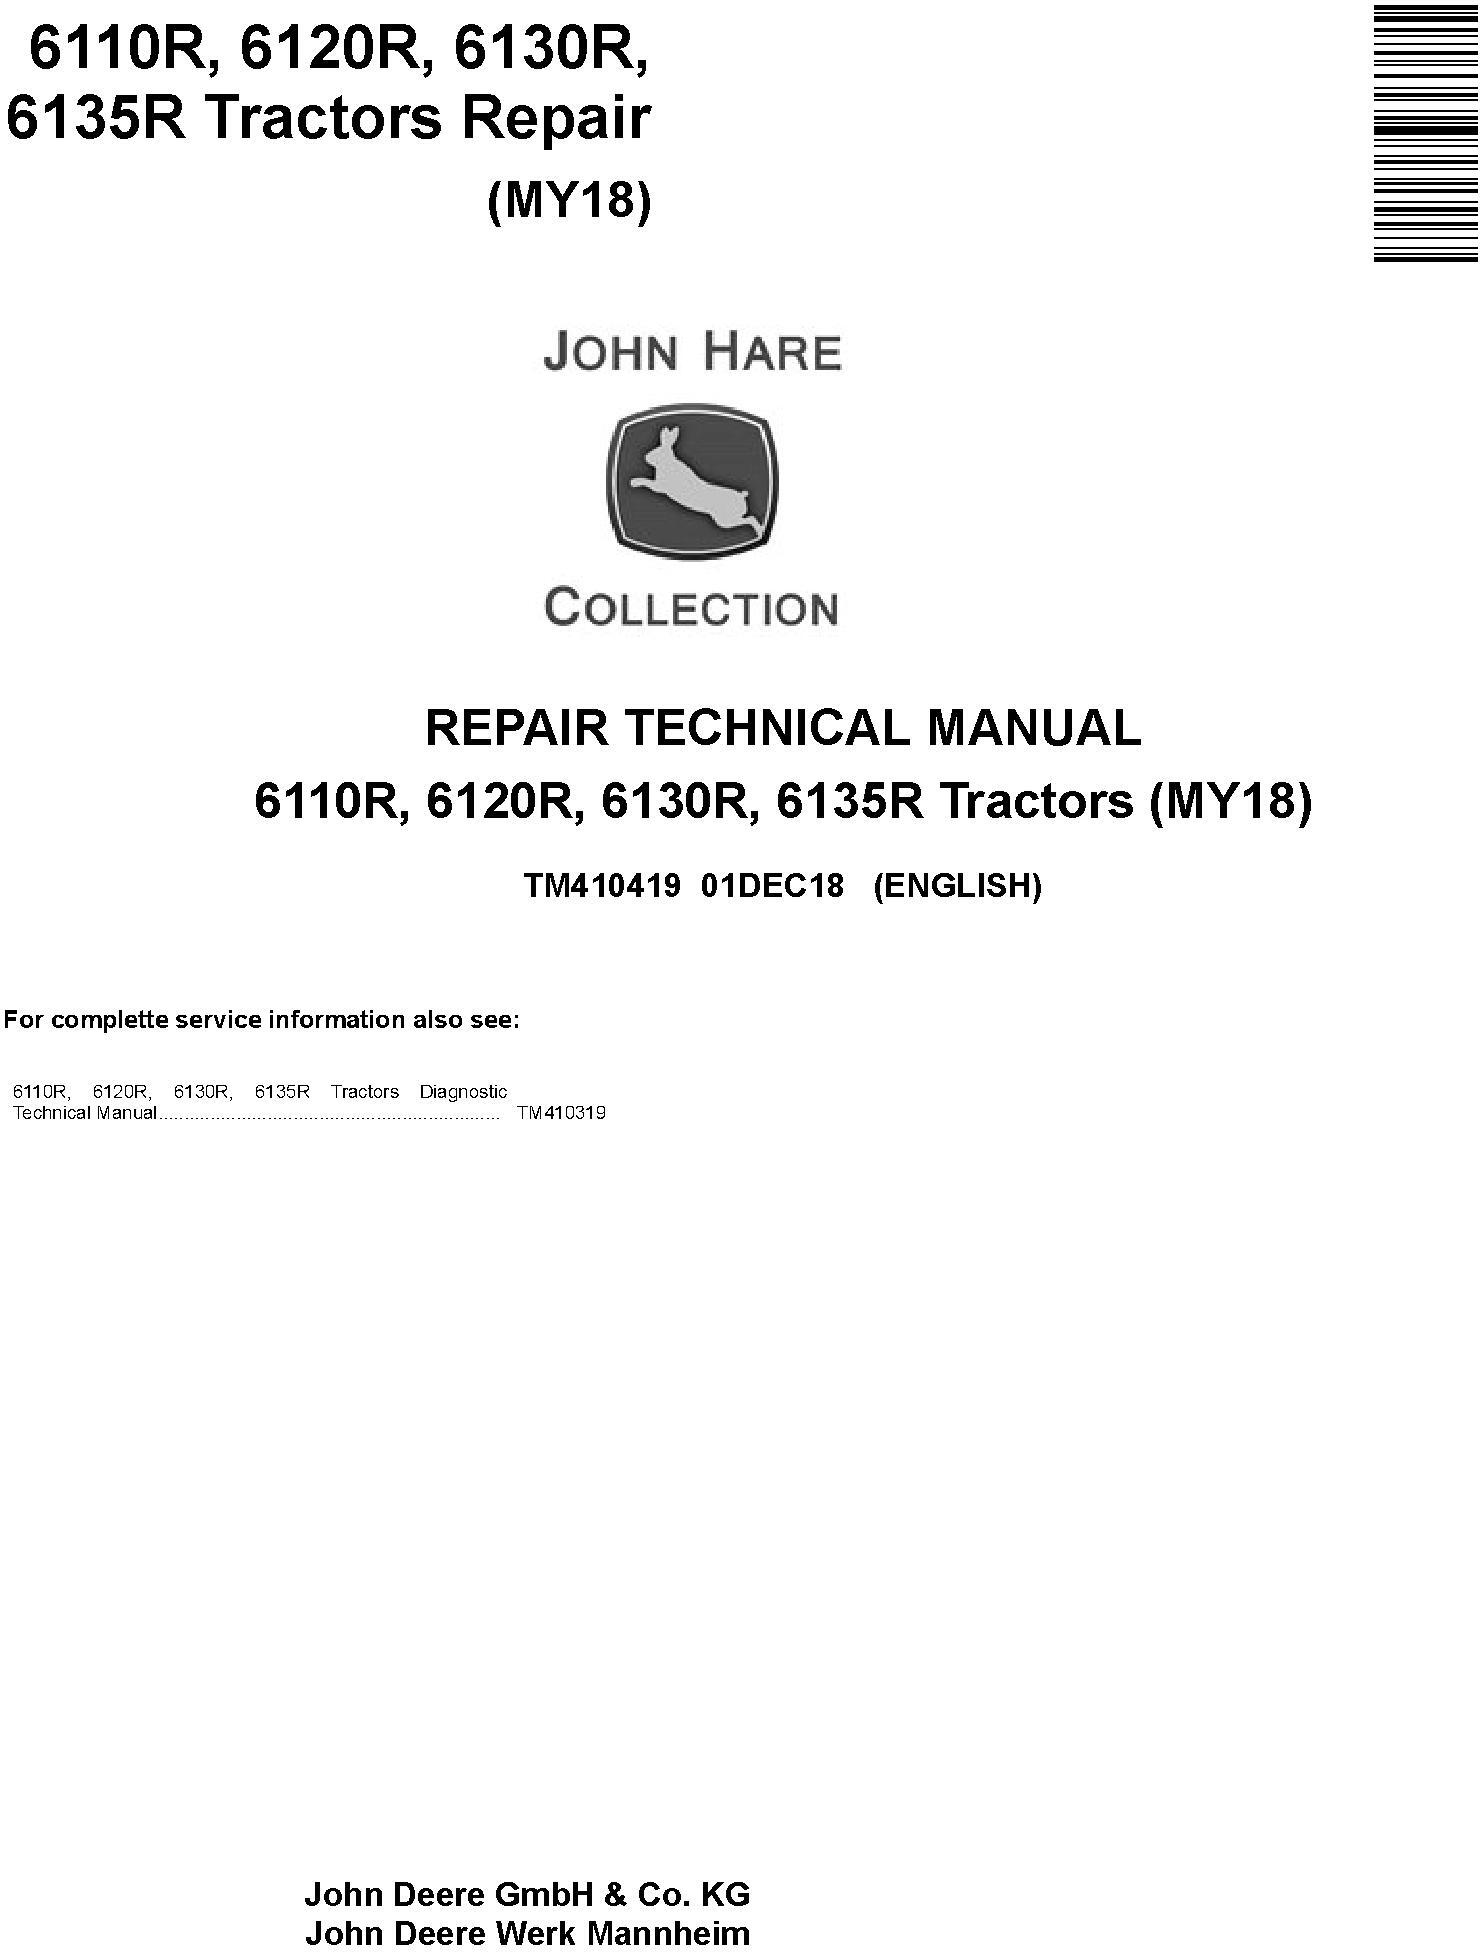 John Deere 6110R, 6120R, 6130R, 6135R Tractors (MY18) Service Repair Technical Manual (TM410419)